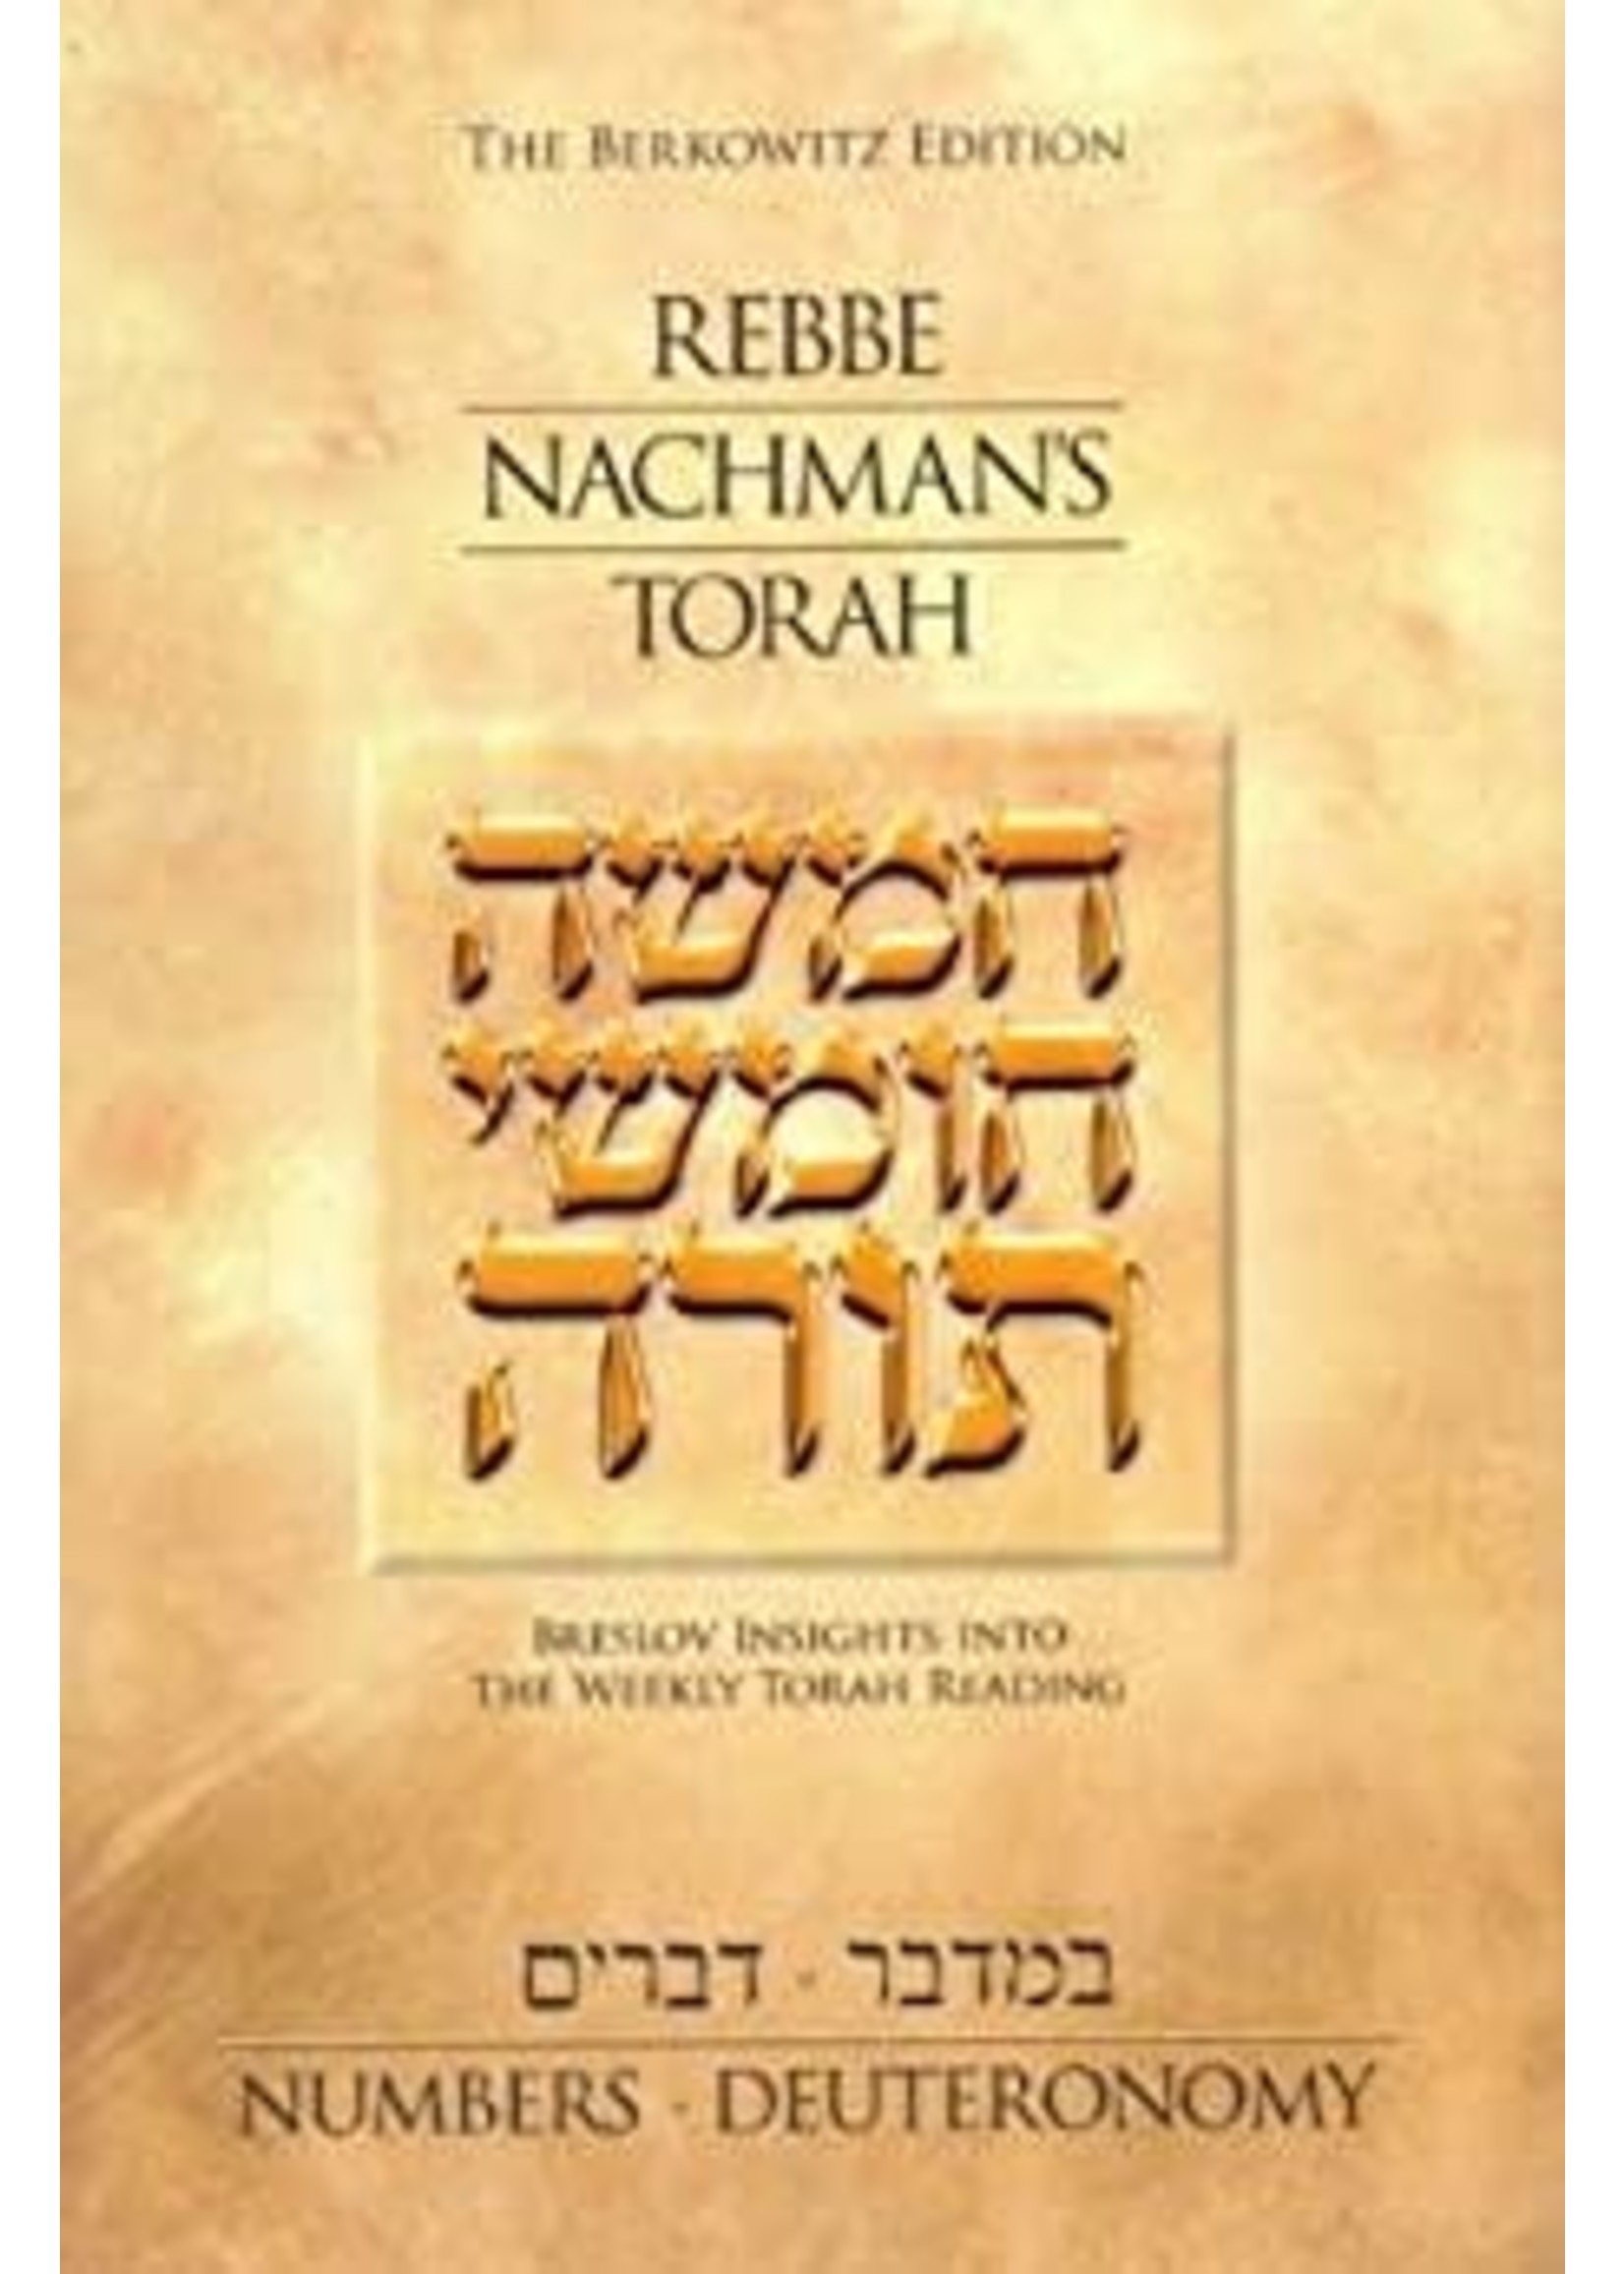 REBBE NACHMAN'S TORAH NUMBERS